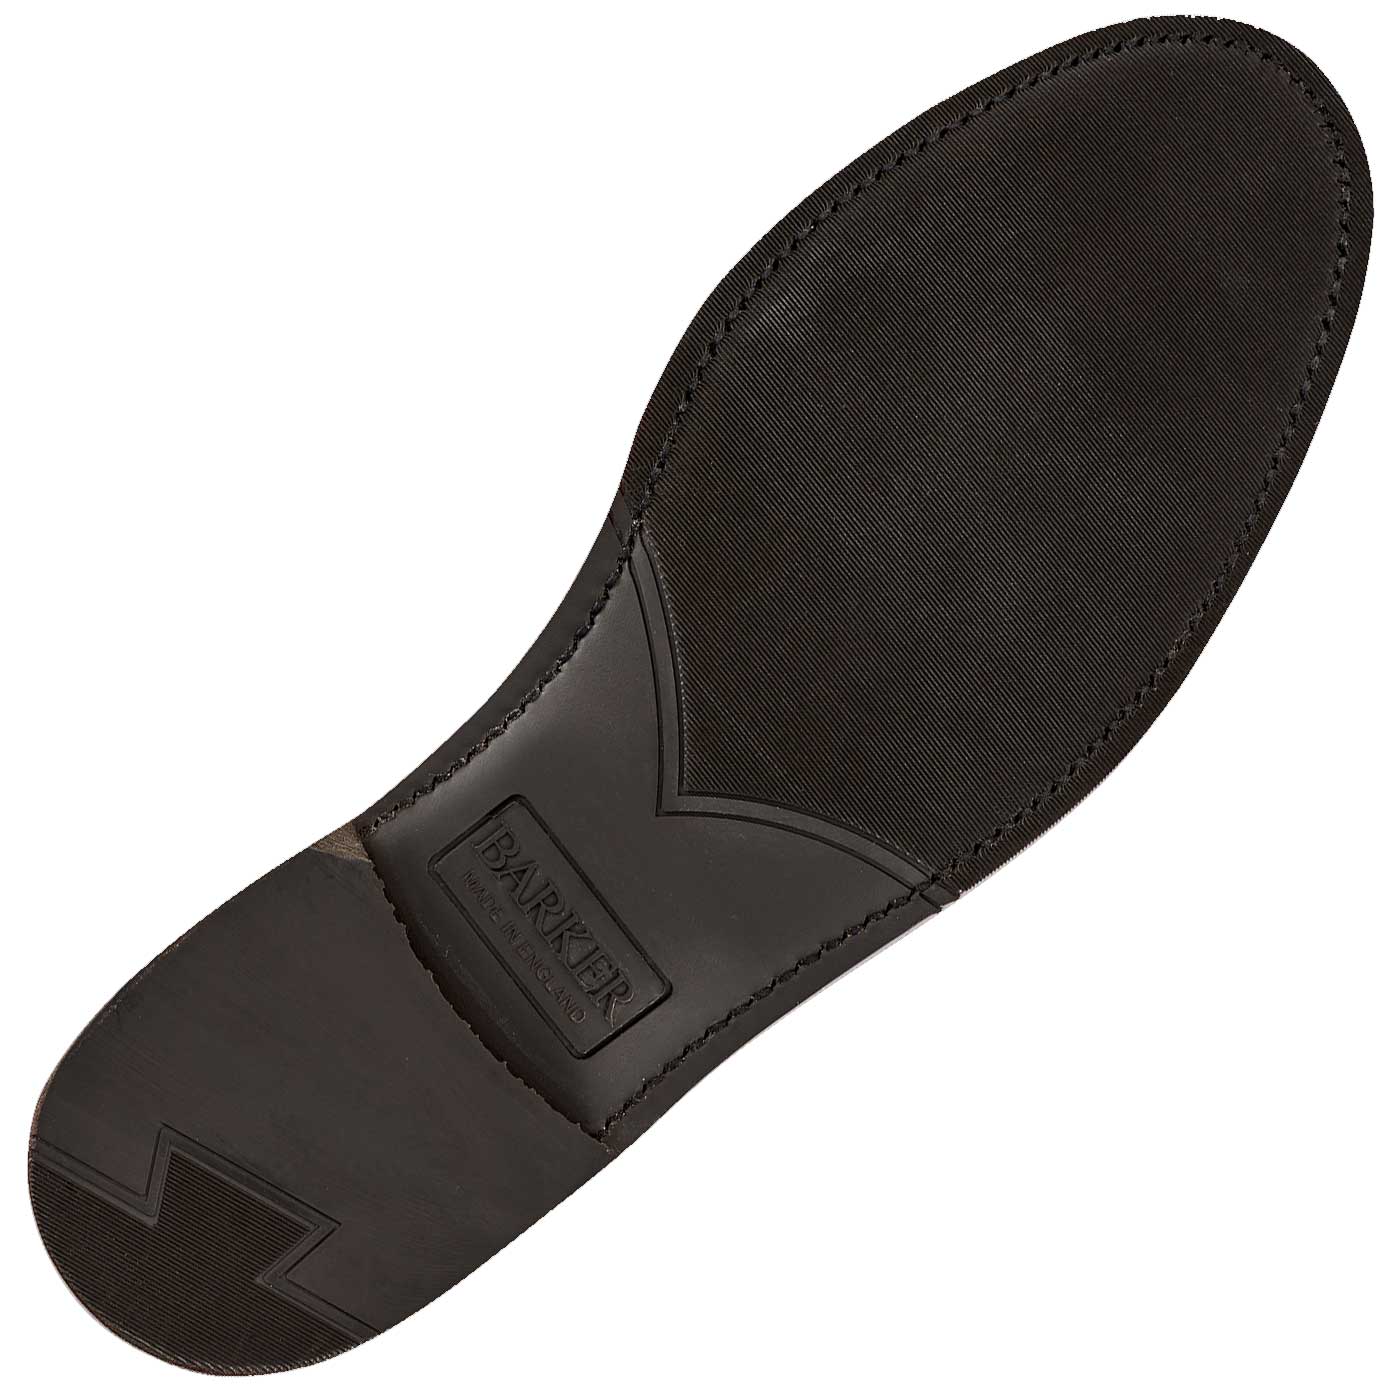 40% OFF Barker Studland Tassel loafer - Black Calf - Size: 6